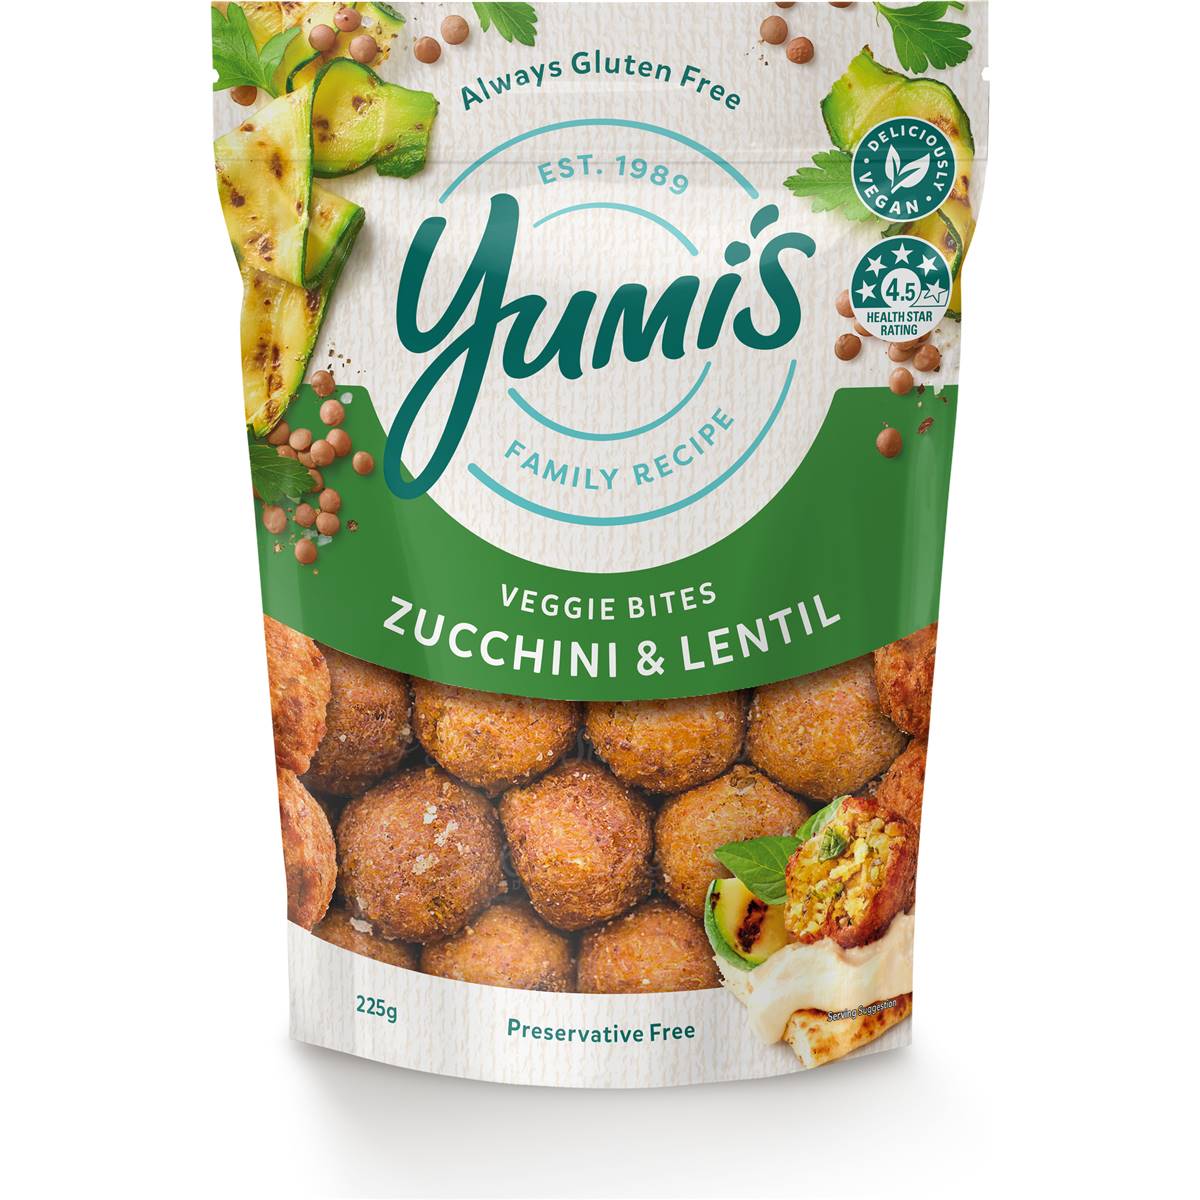 Calories in Yumi's Delights Zucchini & Lentil